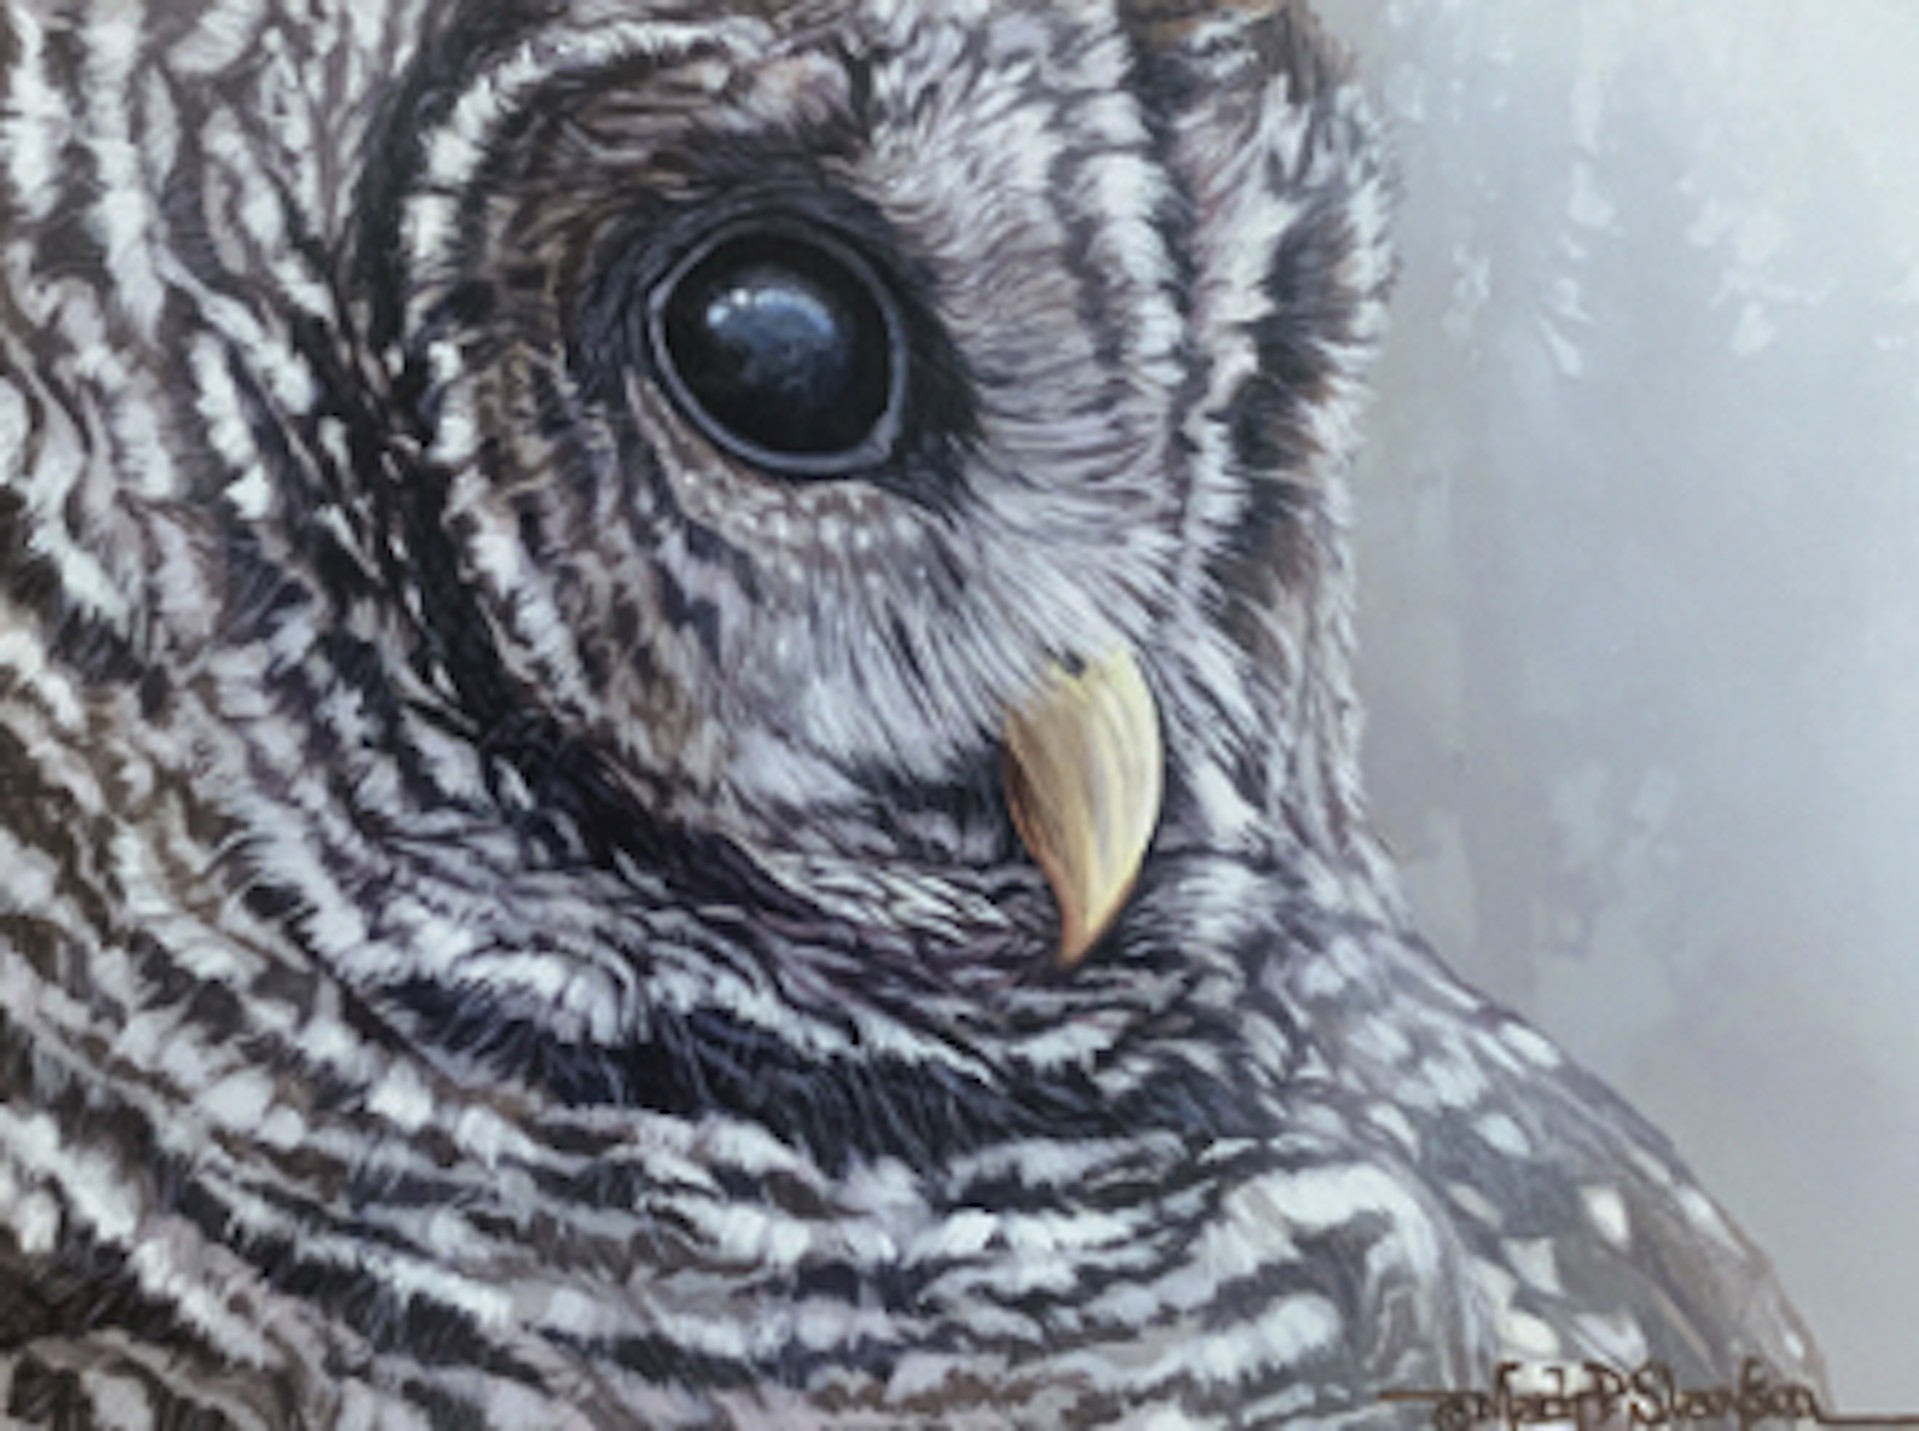 Barred Owl Portrait by Mark Slawson